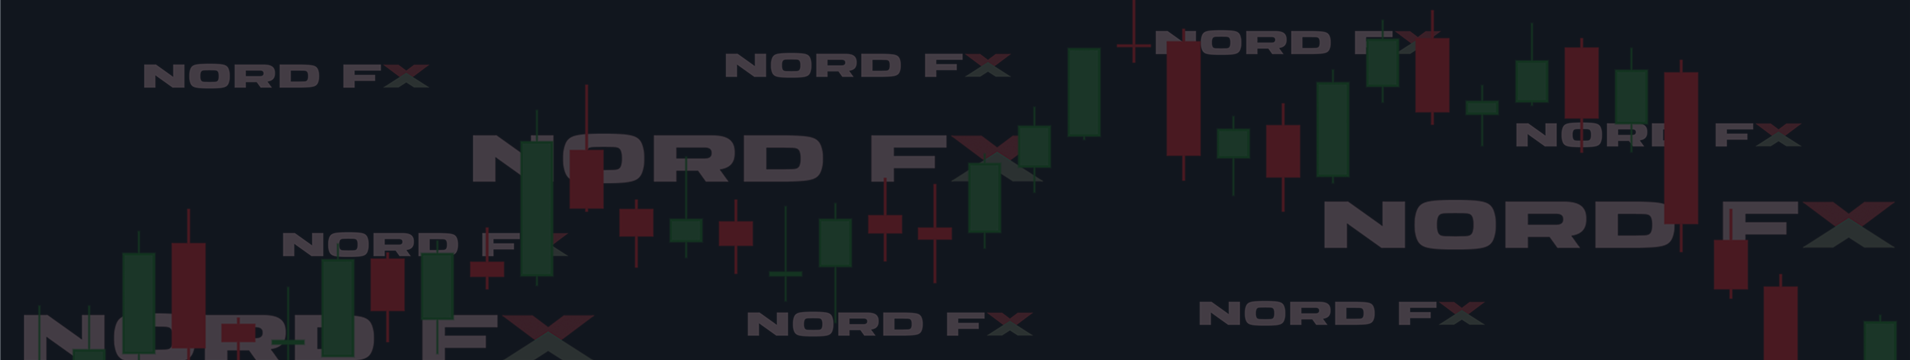 Форекс, криптовалюты, акции. Прогноз на 27 апреля – 01 мая 2020г.